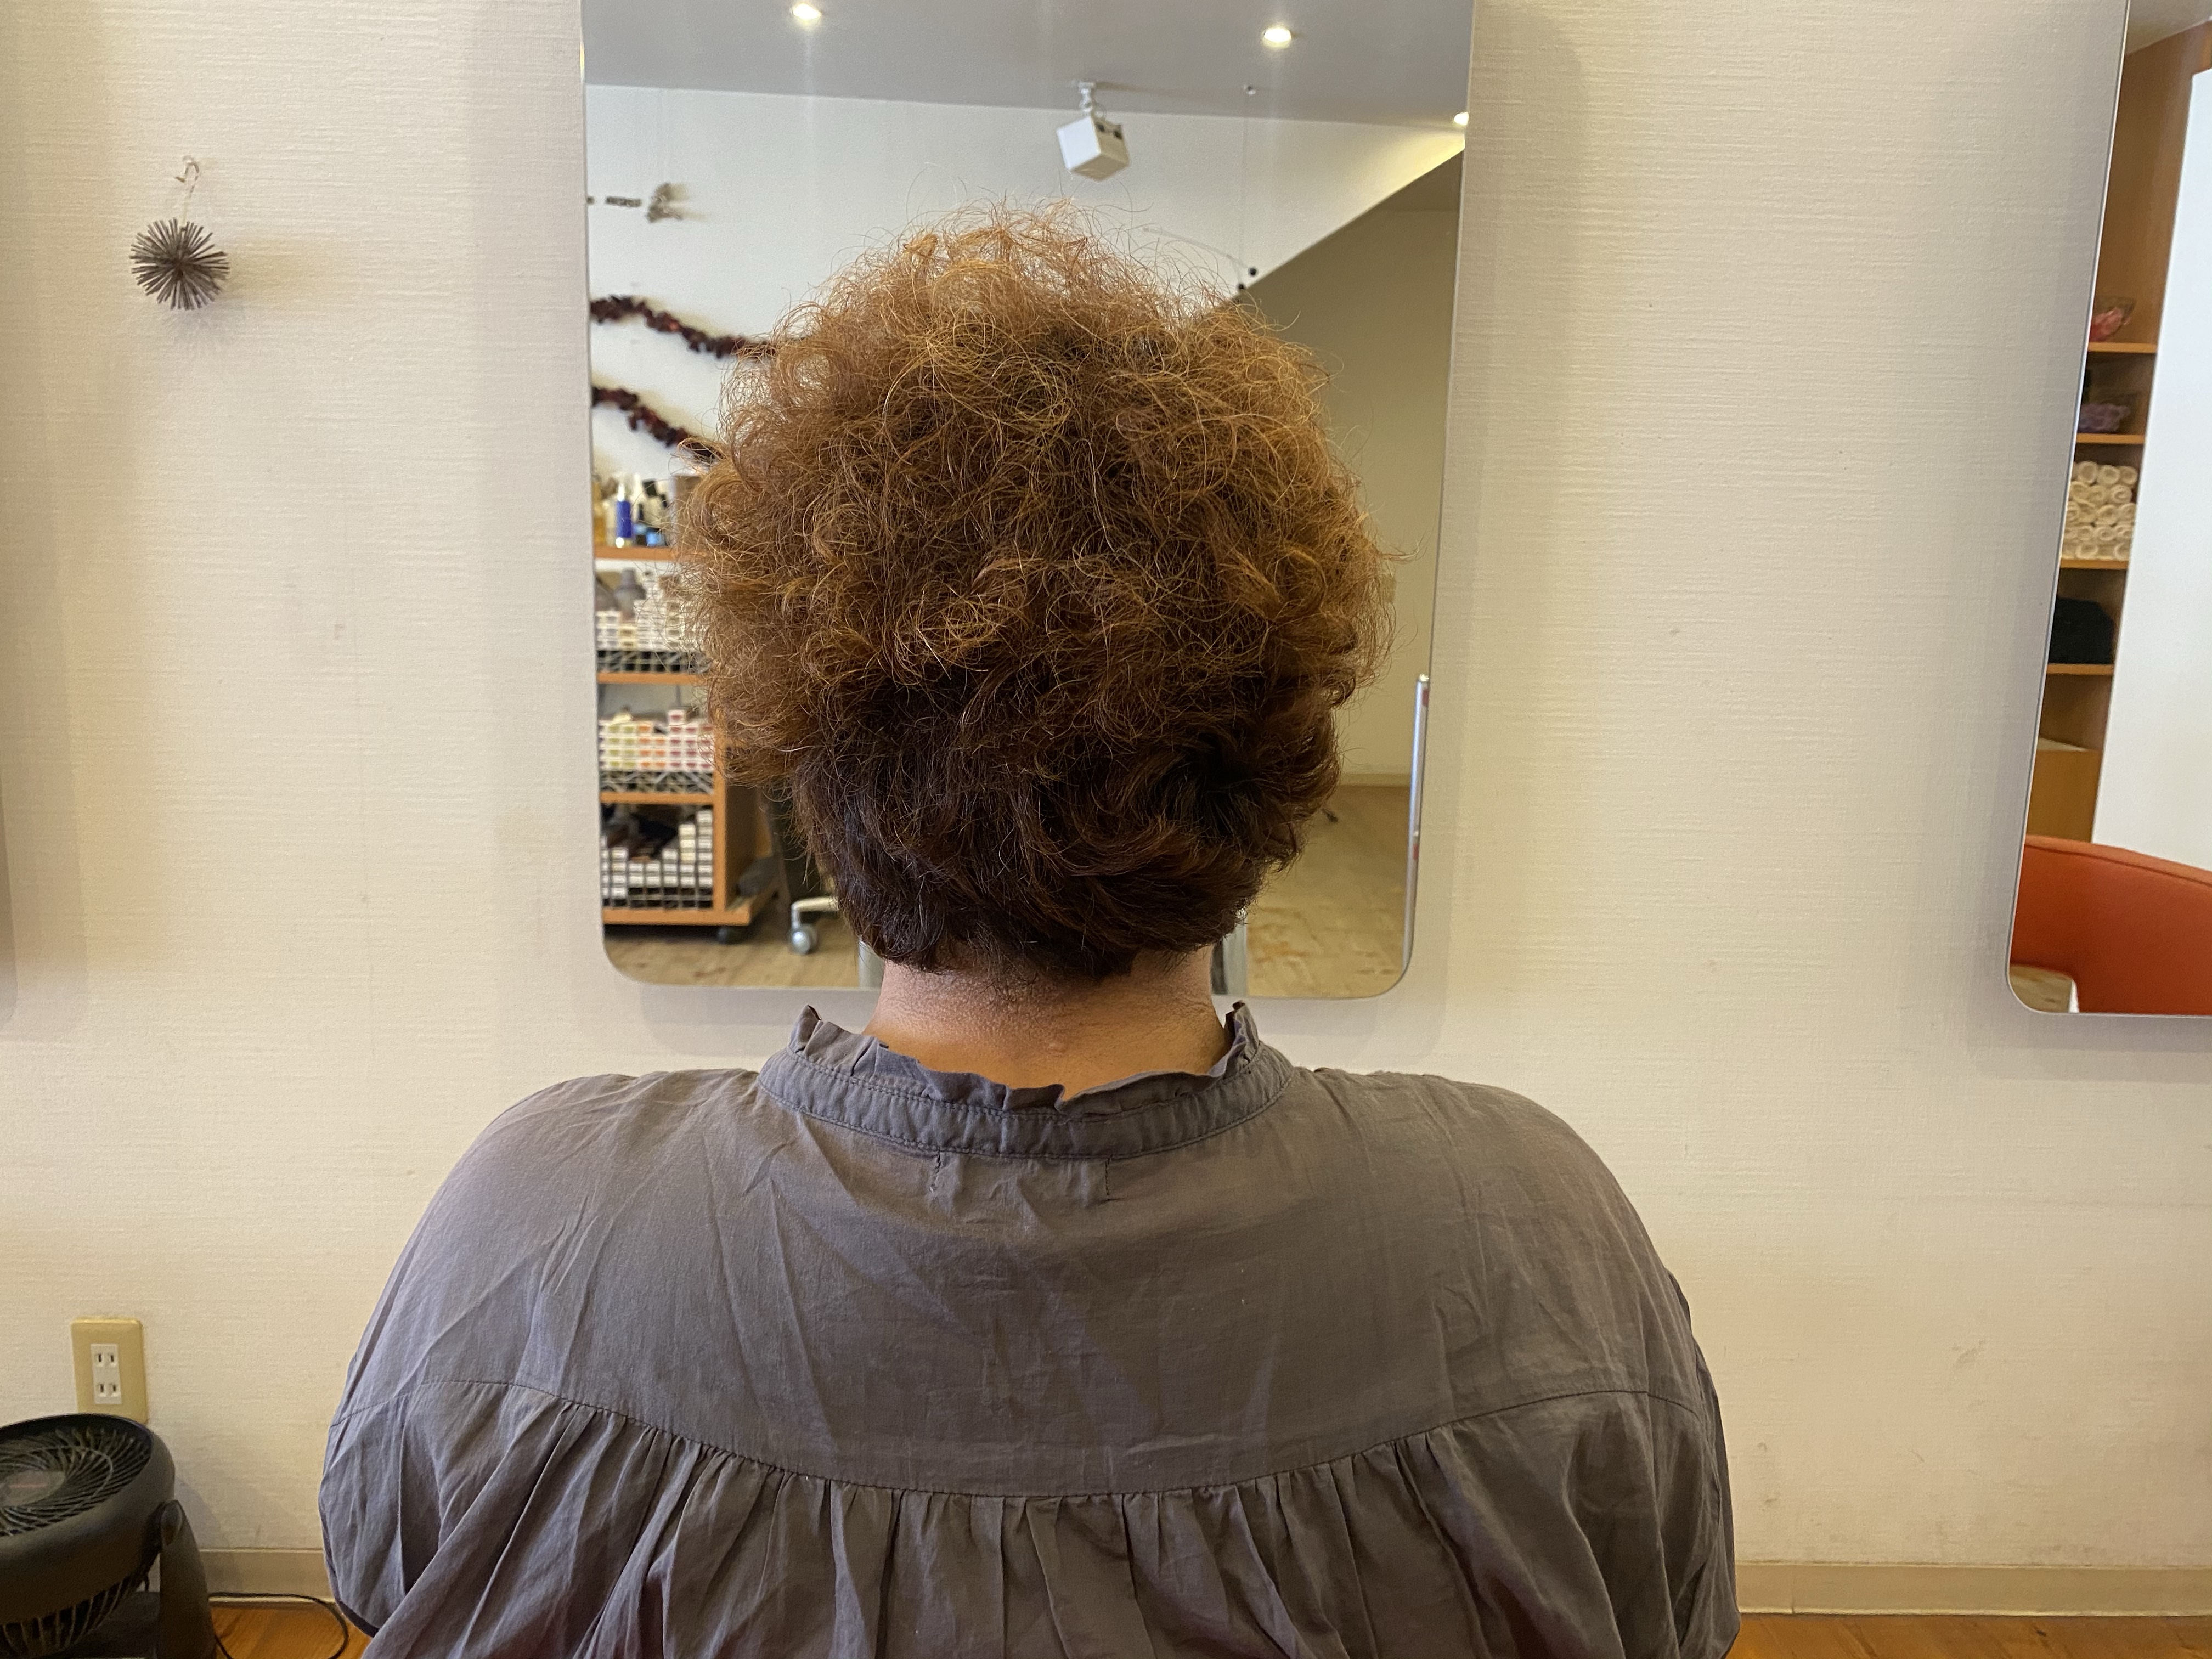 天パ くせ毛を好きになれる髪型にしてくれる美容師と見合う髪型とちょっとしたウンチク 笑 総社市 美容室ルチア 30代 40代 50代の髪の悩み解消